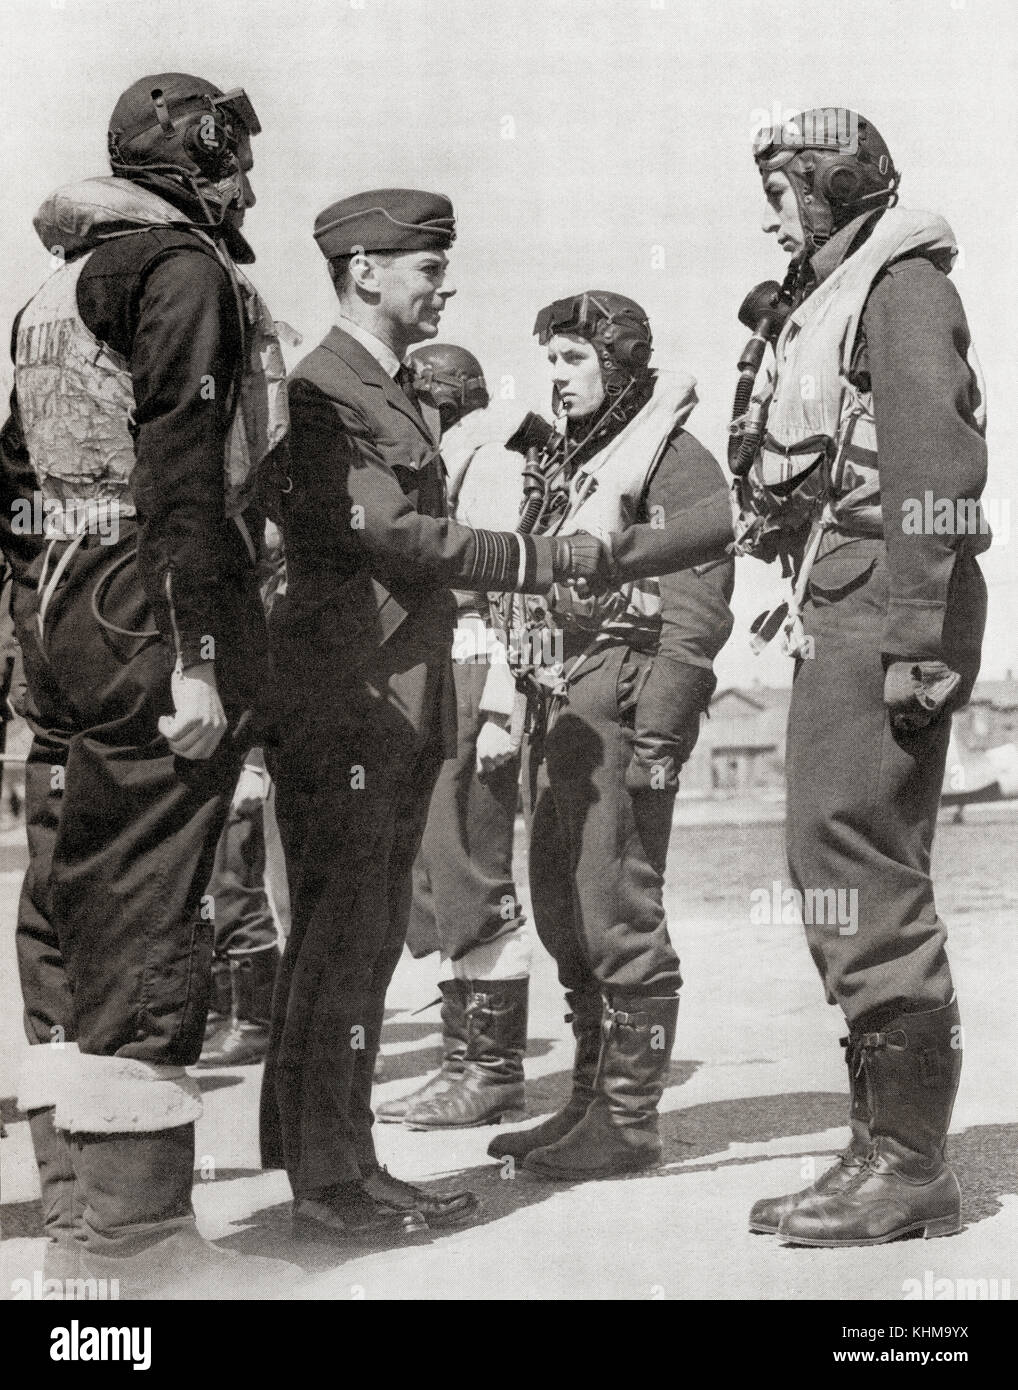 George vi Touring der r.a.f. Fighter Stationen in 1942 während des Zweiten Weltkriegs. George VI., 1895-1952 König des Vereinigten Königreichs und der dominions des British Commonwealth. Stockfoto